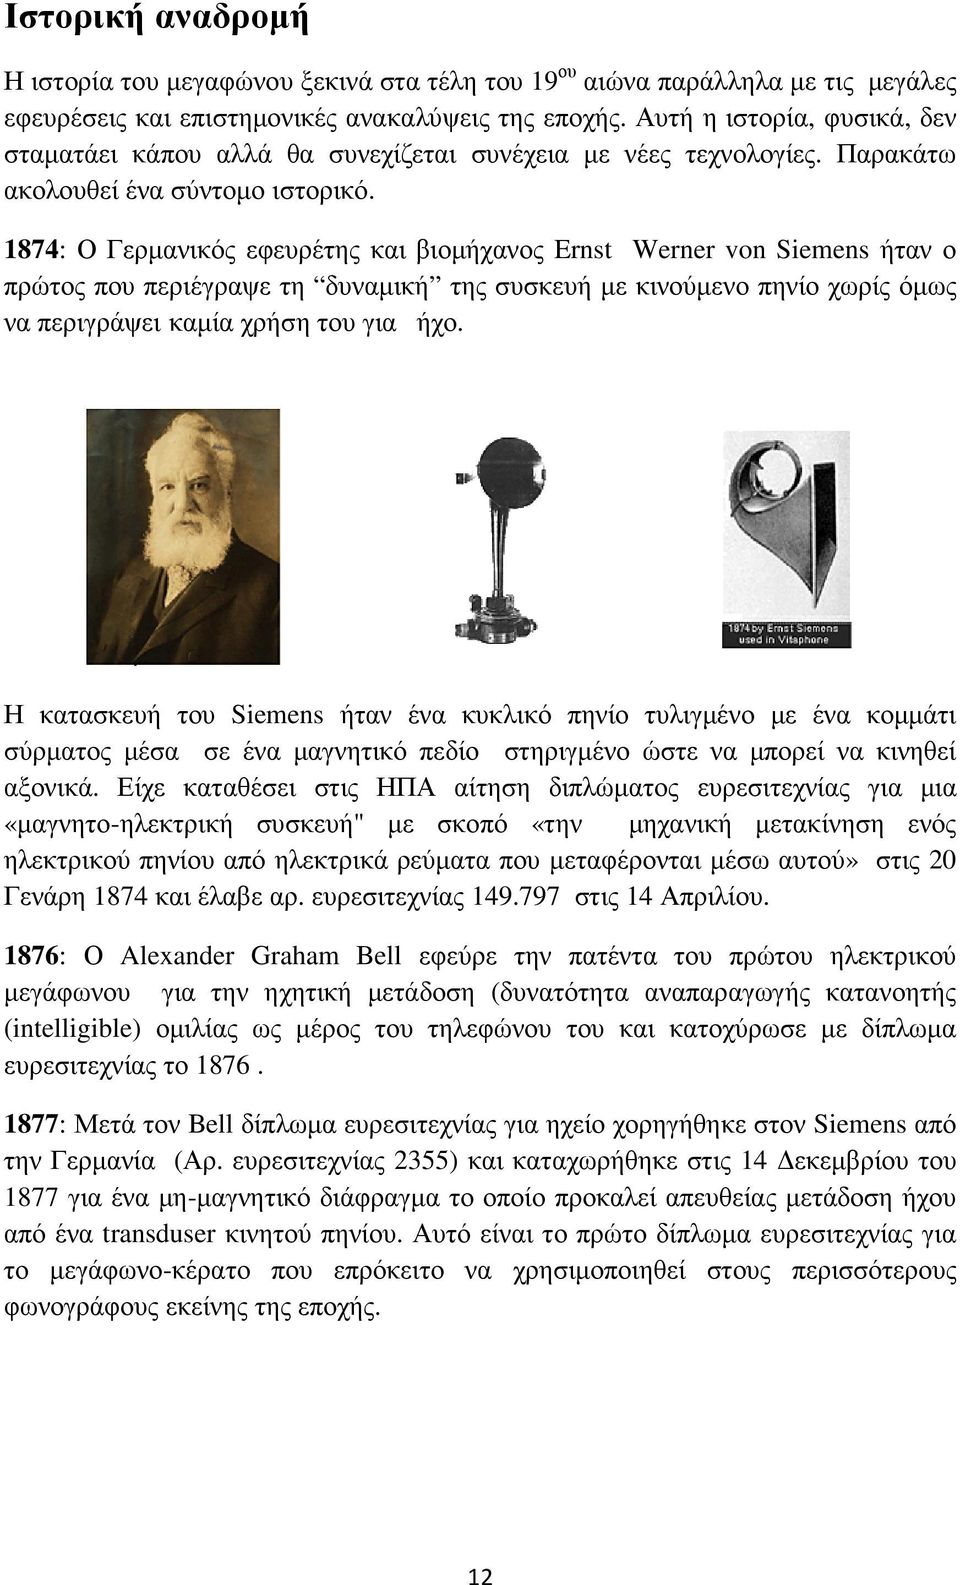 1874: Ο Γερµανικός εφευρέτης και βιοµήχανος Ernst Werner von Siemens ήταν ο πρώτος που περιέγραψε τη δυναµική της συσκευή µε κινούµενο πηνίο χωρίς όµως να περιγράψει καµία χρήση του για ήχο.